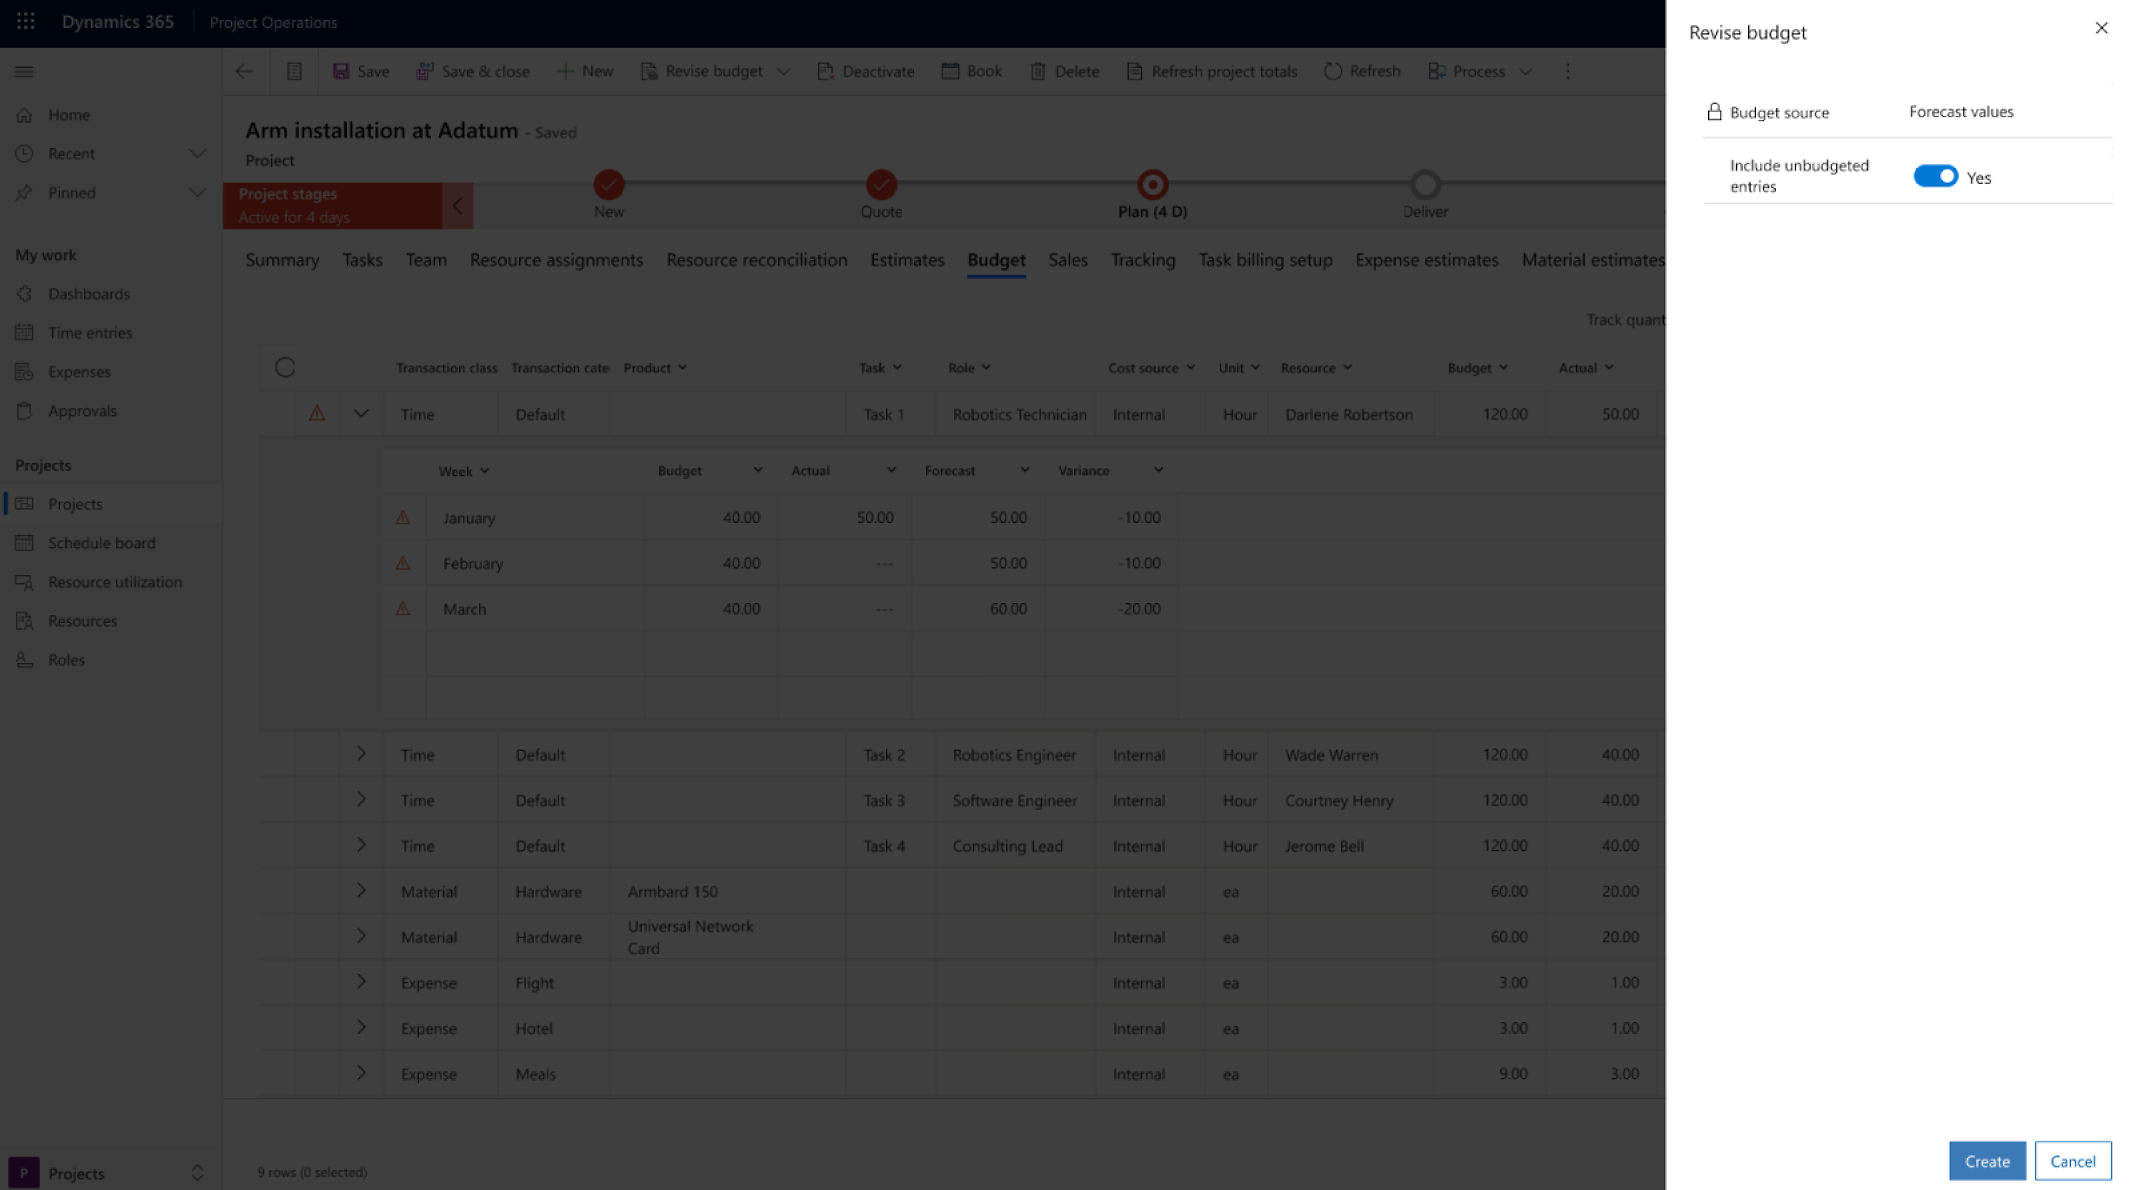 Captura de tela de uma interface de revisão de orçamento no Microsoft Dynamics 365 com foco nas operações do projeto